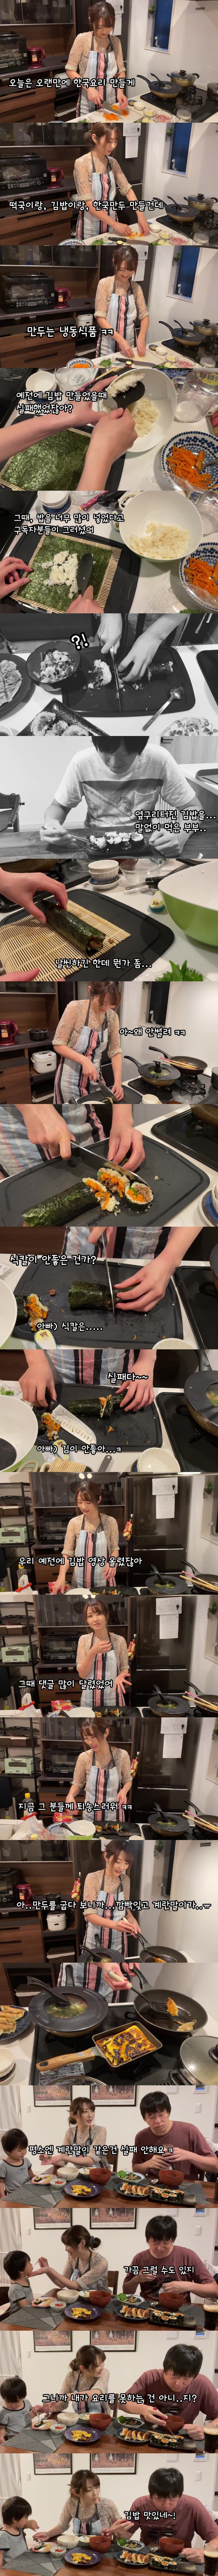 일본인 아내의 김밥 만들기 도전..jpg